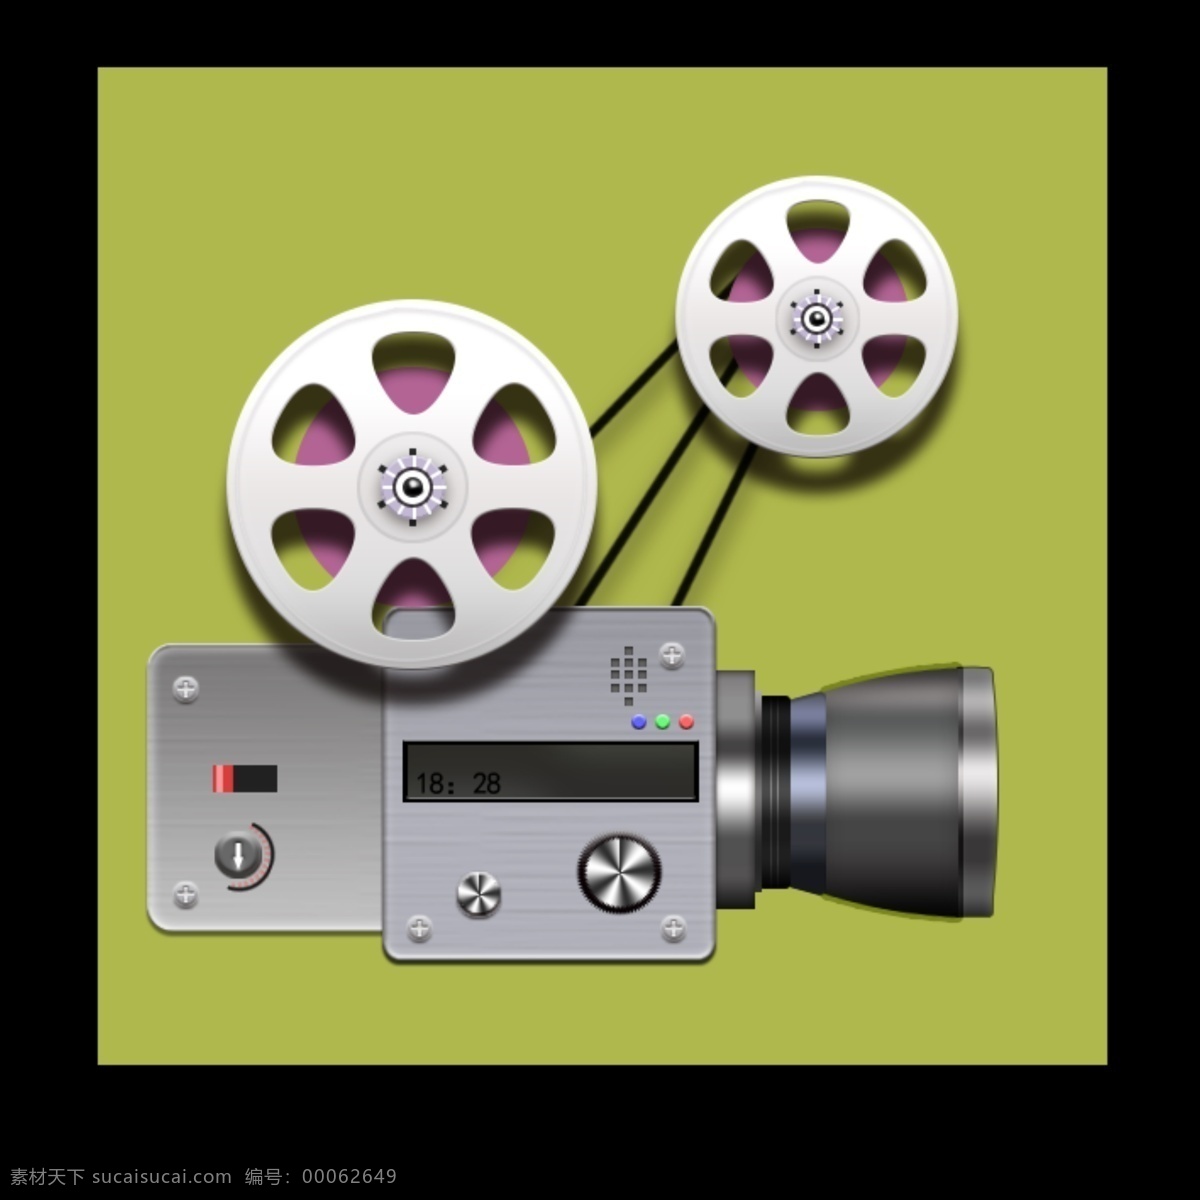 电影放映机 psd分层 电影胶片 电影院素材 放映机 胶卷 摄像机 影院素材 电影拷贝 原创设计 原创3d模型